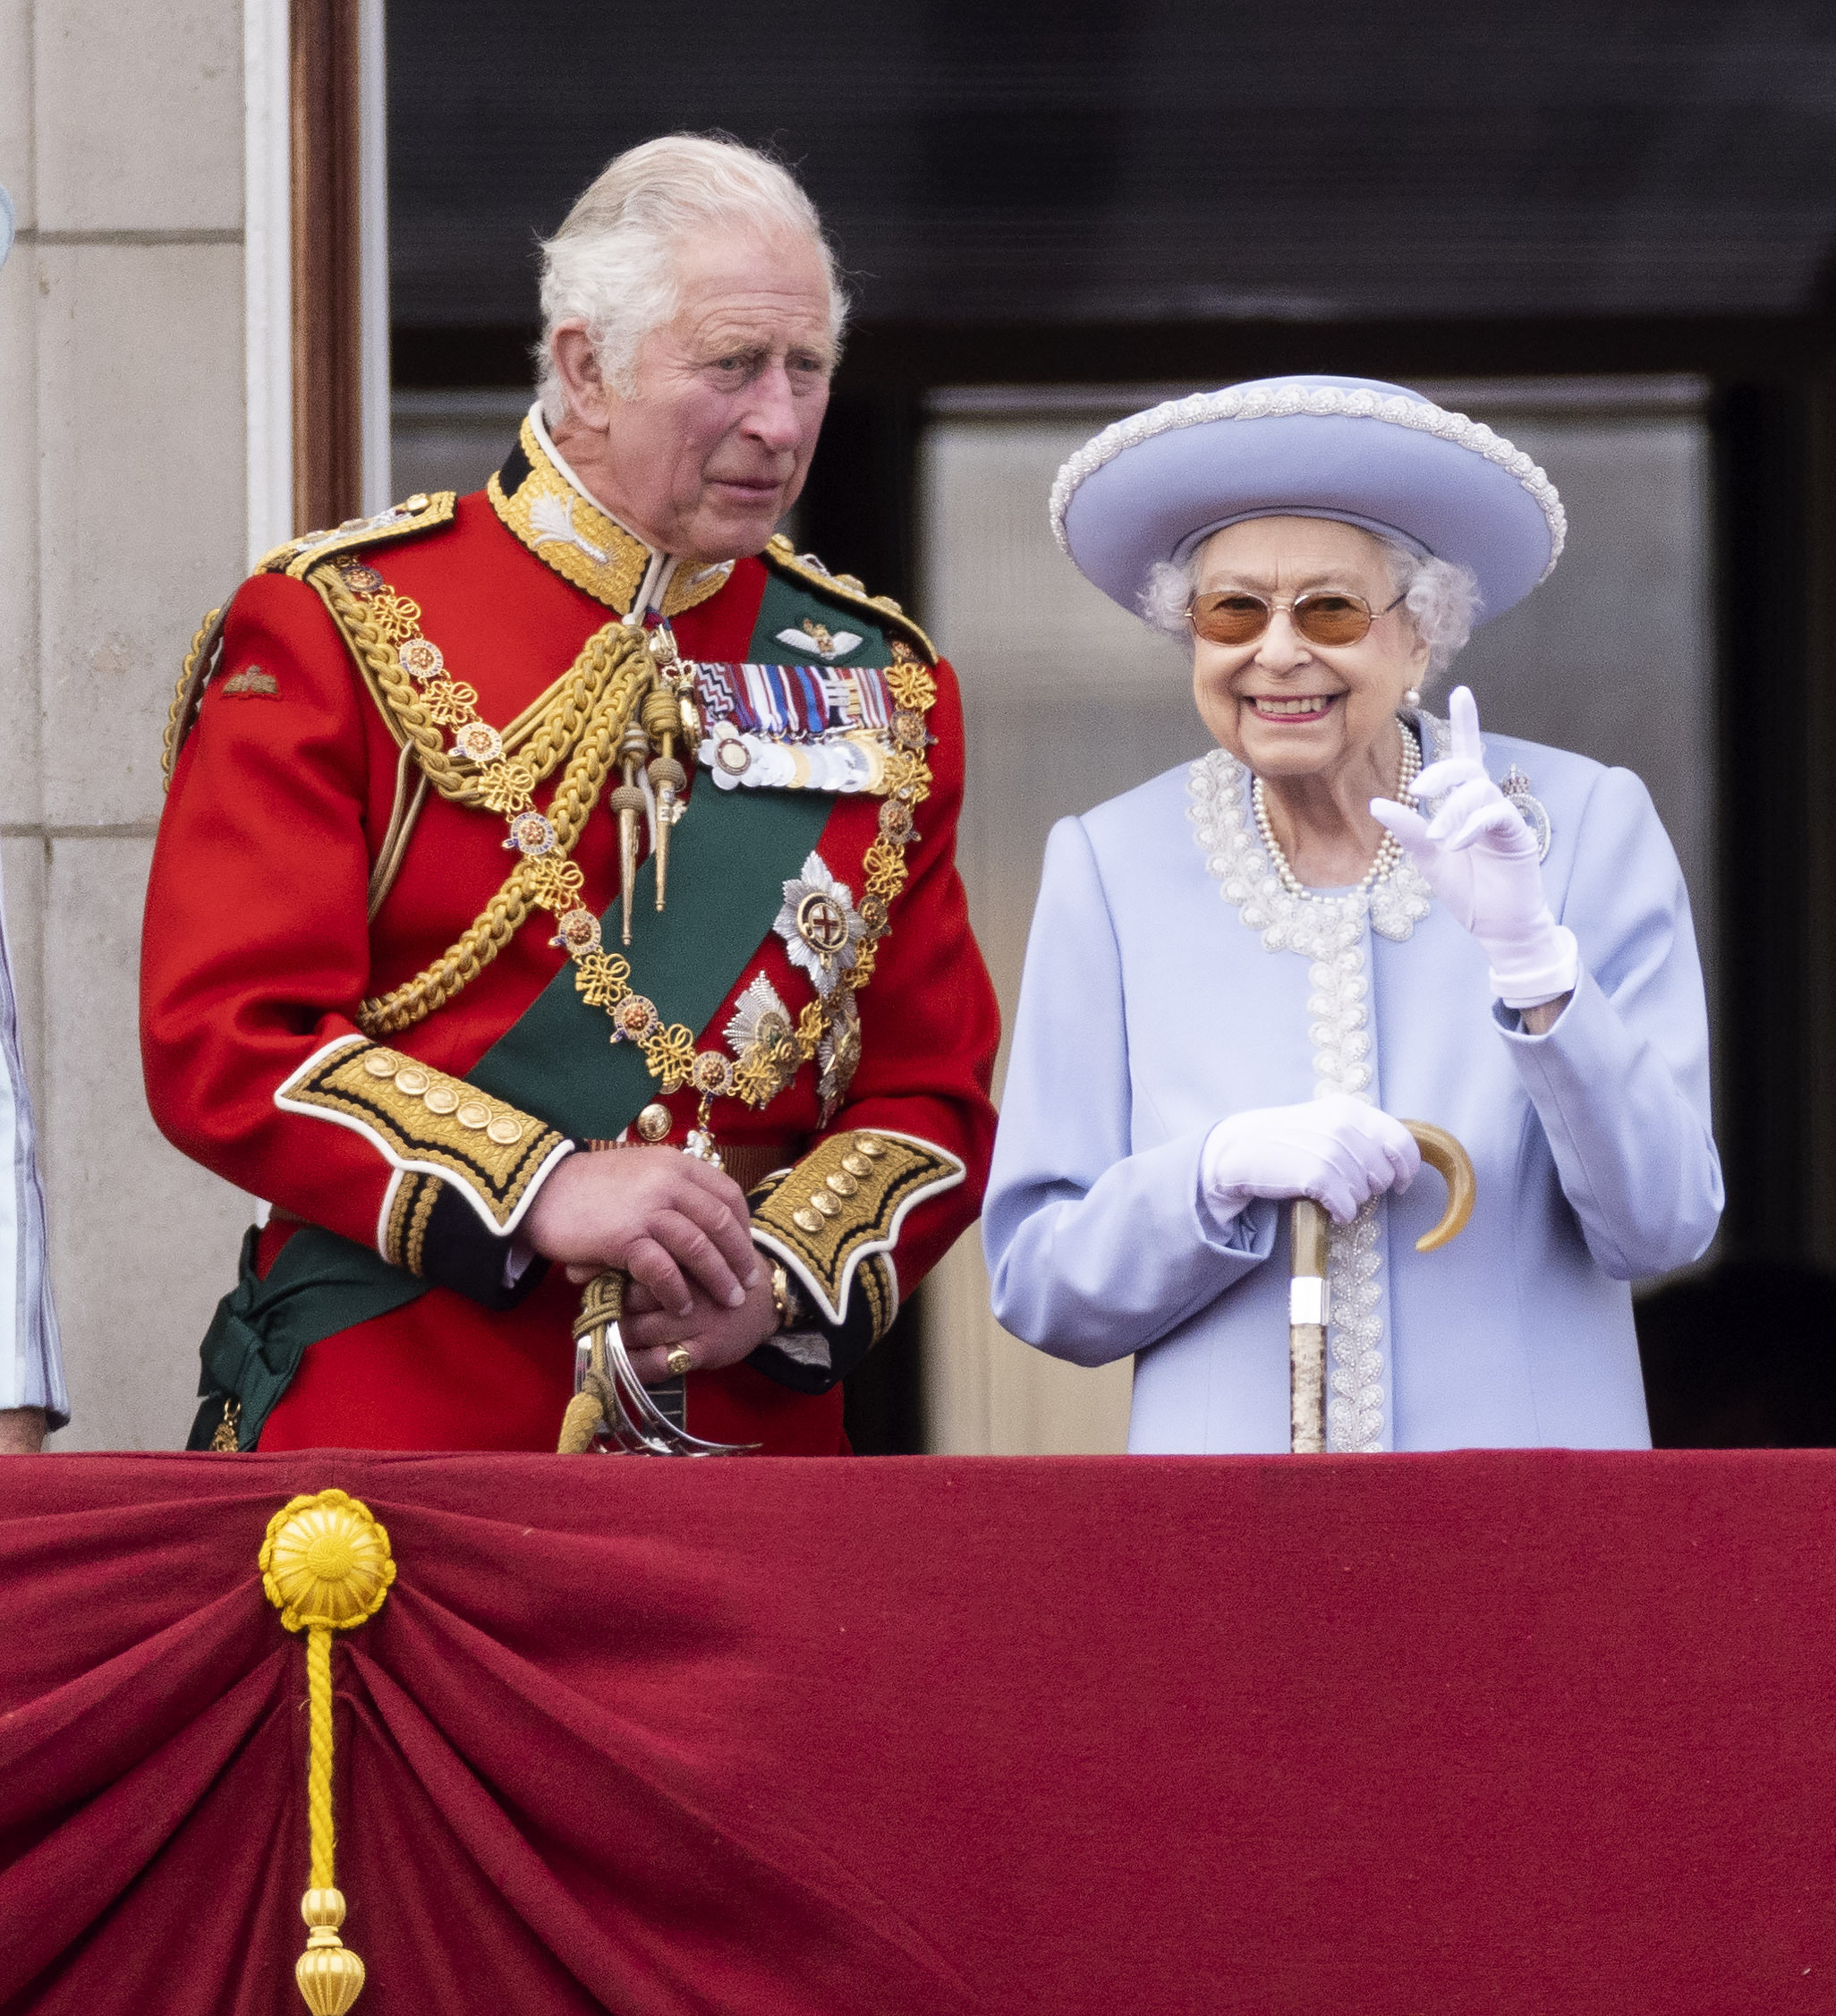 Ritkán hallott érdekességek a királyi családról! Tudtad például, hogy  Erzsébet királynőnek két születésnapja van? - kiskegyed.hu